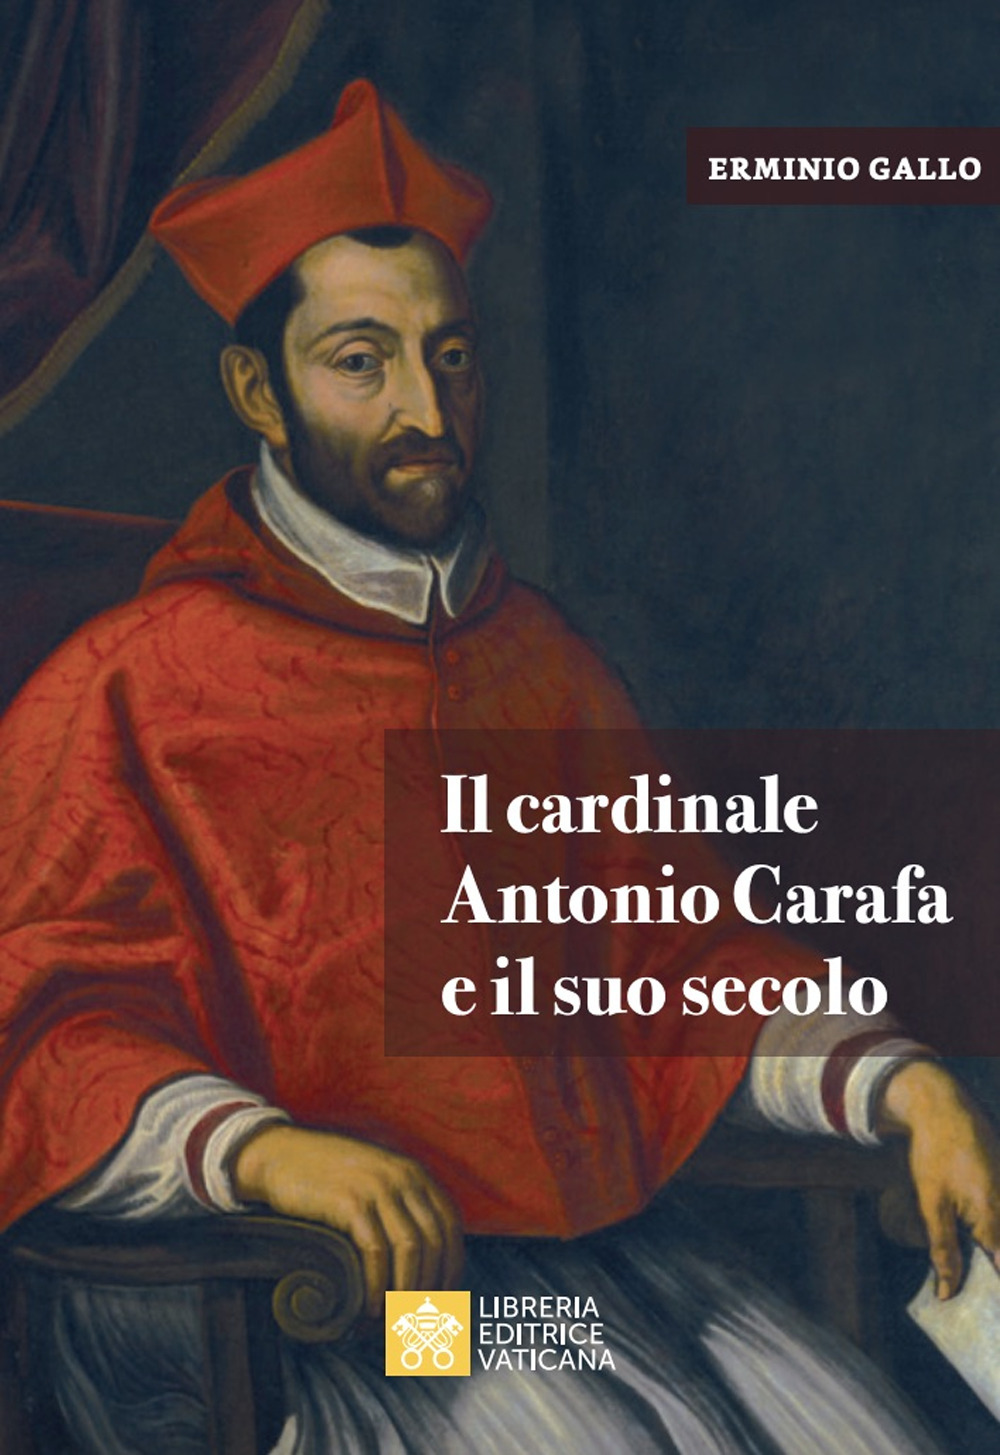 Image of Il cardinale Antonio Carafa e il suo secolo